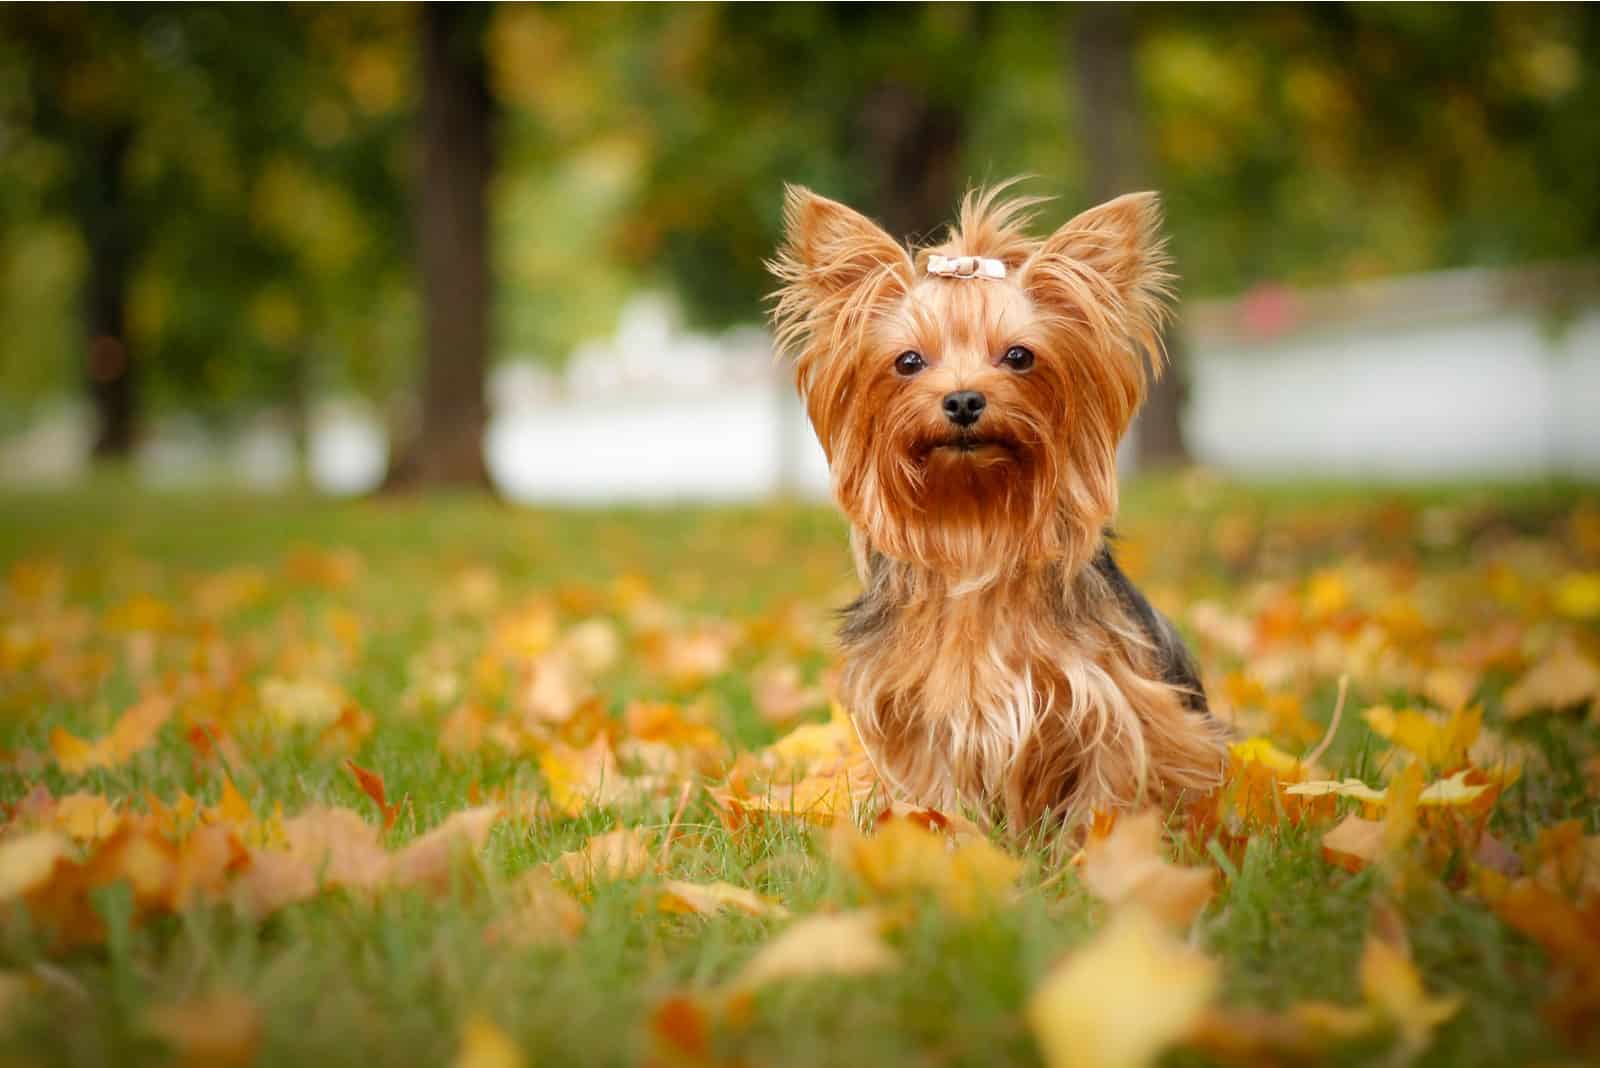 Yorkshire Terrier puppy portrait on grass